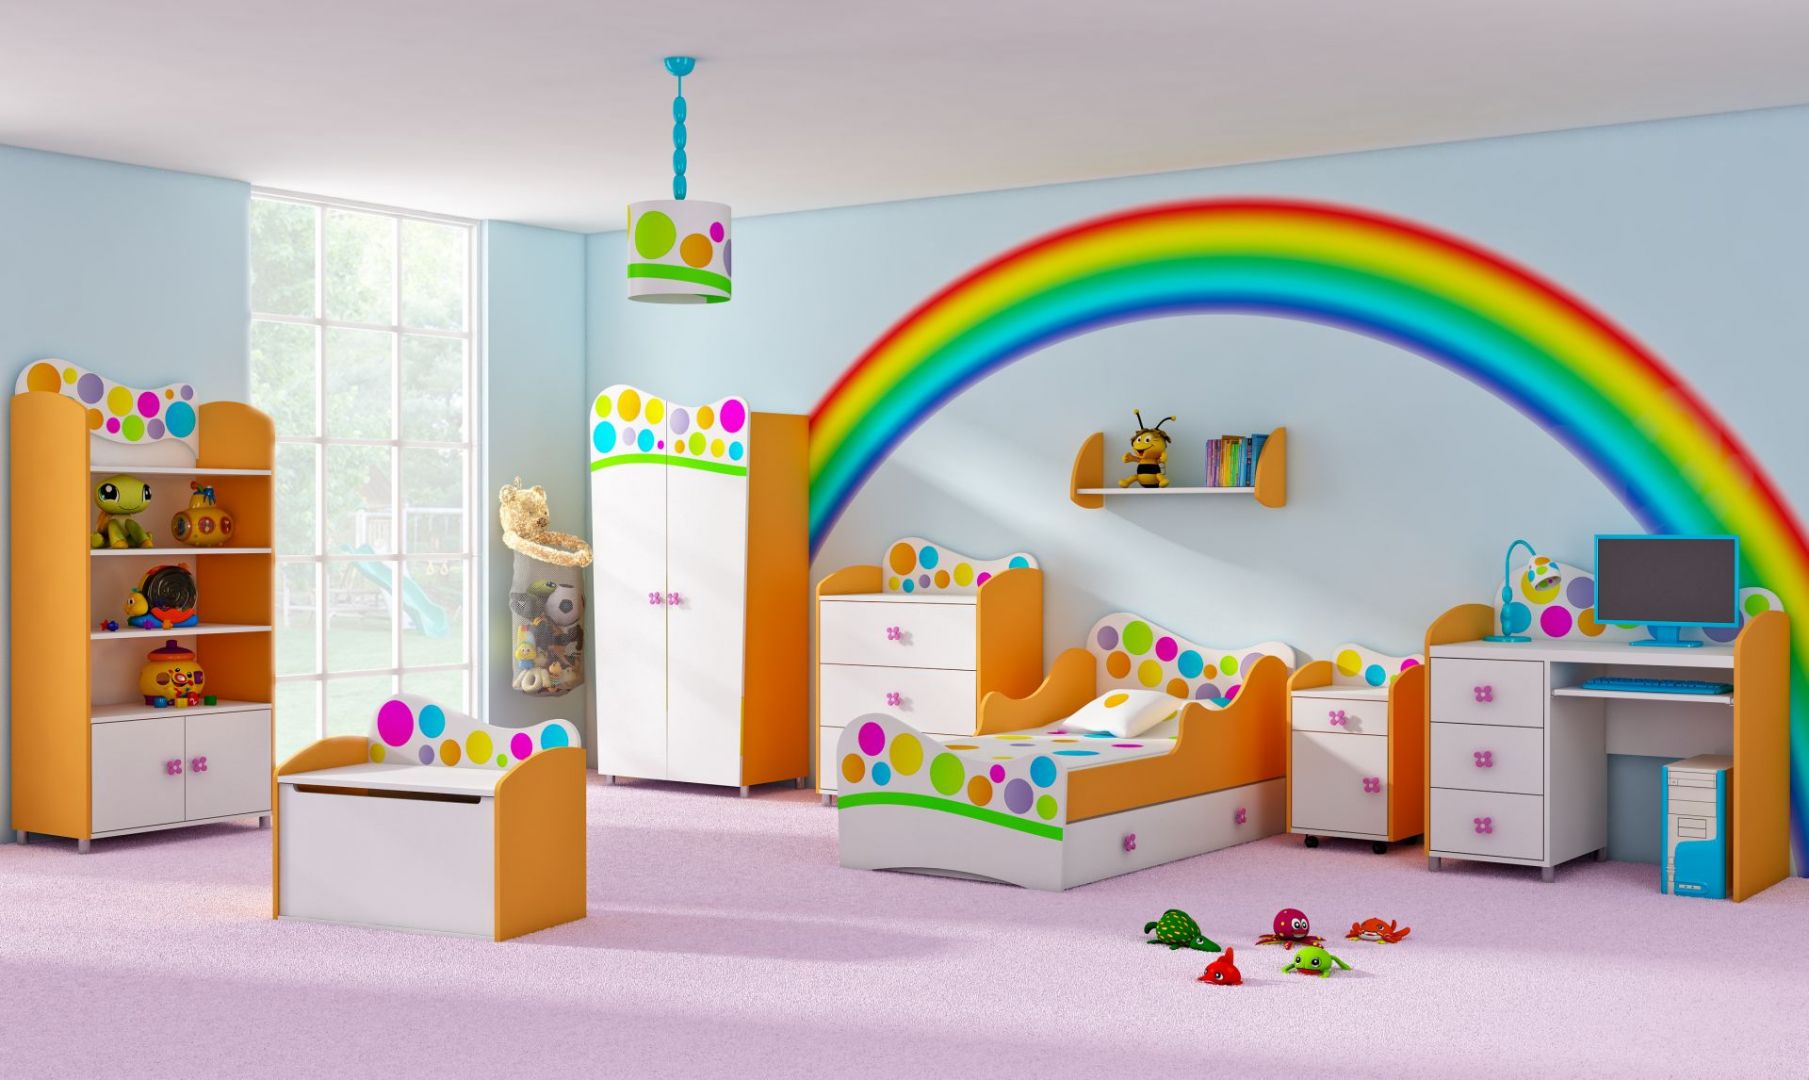 Kolekcja Rainbow jest idealna do pokoju dziecka. Wprowadzi do niego pozytywny nastrój dzięki dużej ilości żywych kolorów. Fot. Baby Best